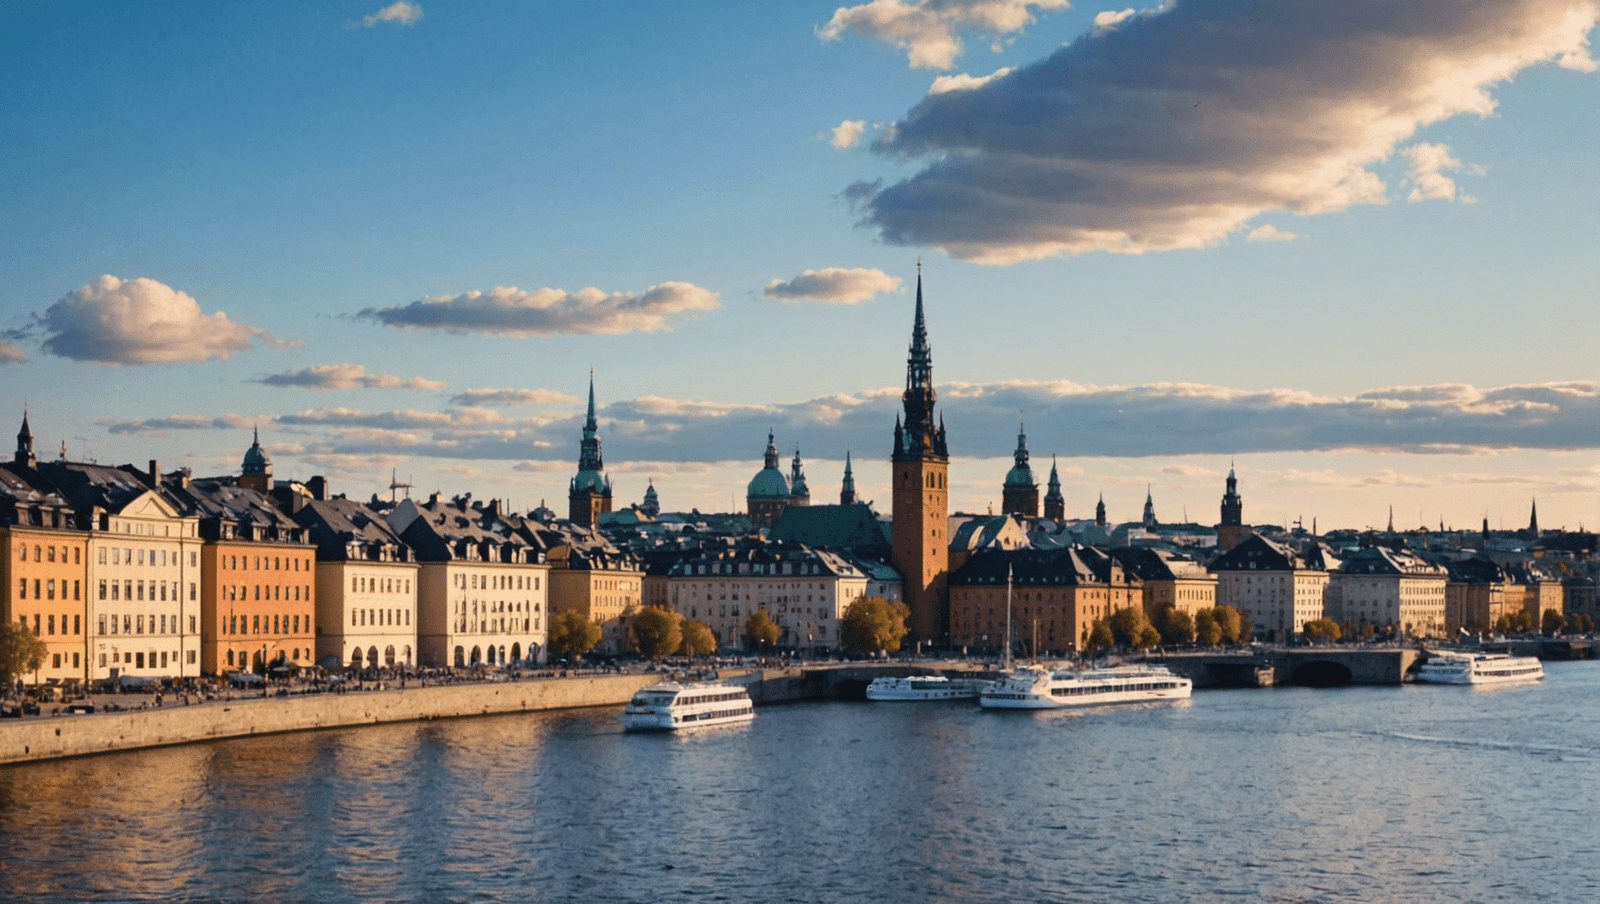 découvrez stockholm : le guide de voyage ultime pour explorer la capitale suédoise. trouvez les meilleurs sites, activités et lieux d'intérêt pour une expérience inoubliable à stockholm.